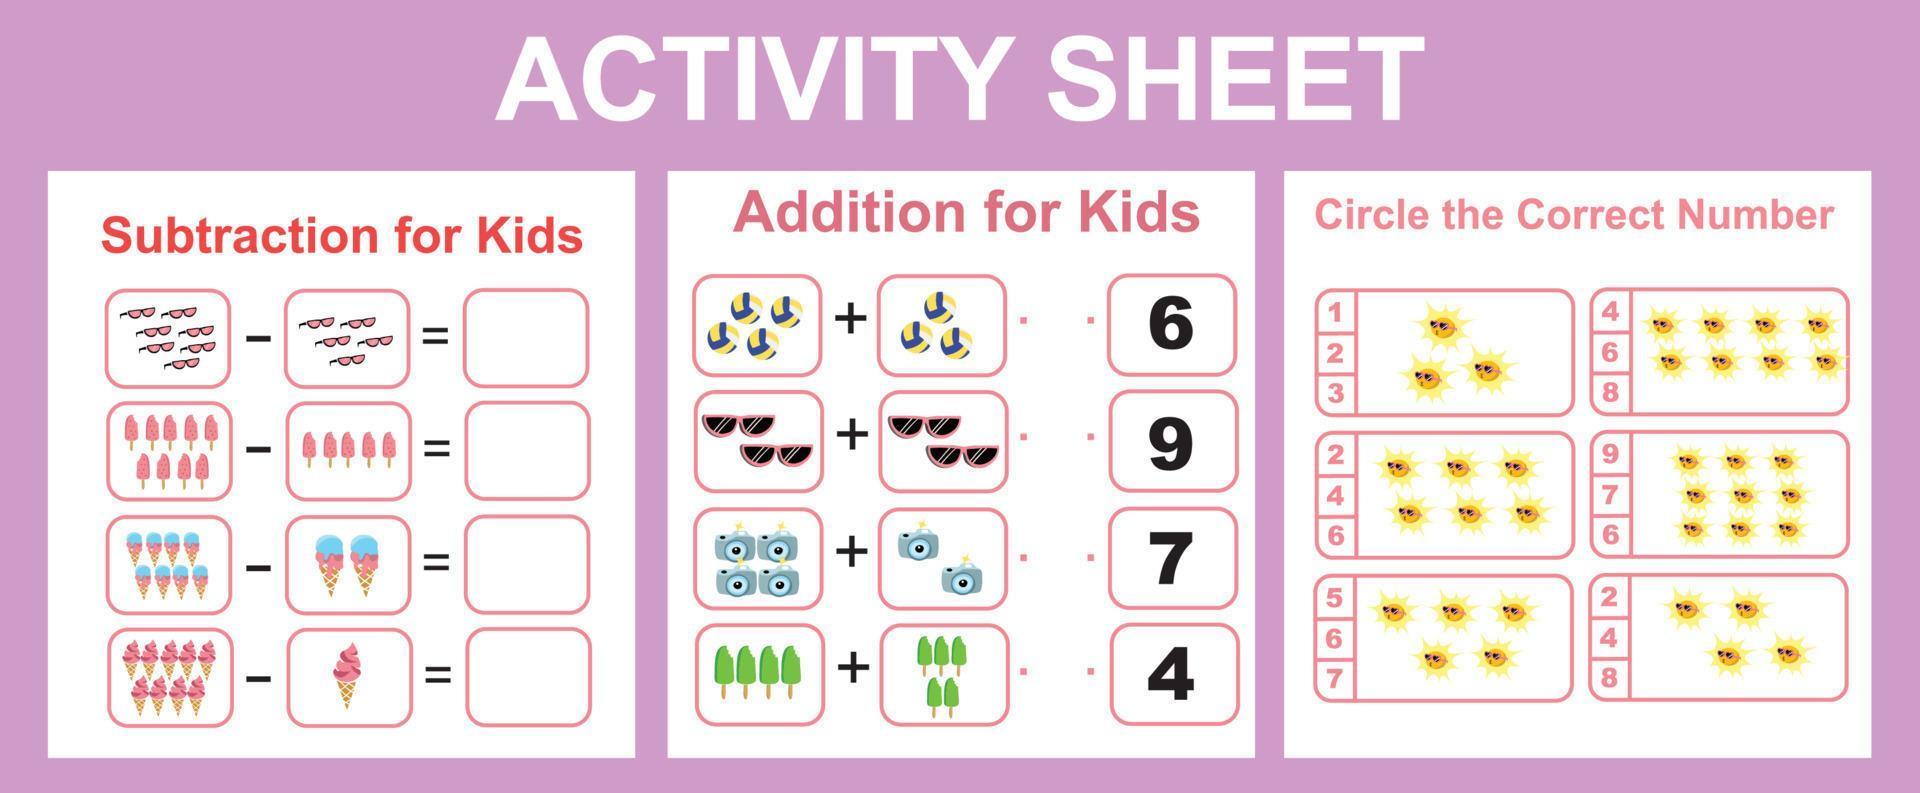 3 in 1 printable activity sheet for children. Activity sheet for children. Educational printable worksheet. Summer worksheet theme. vector